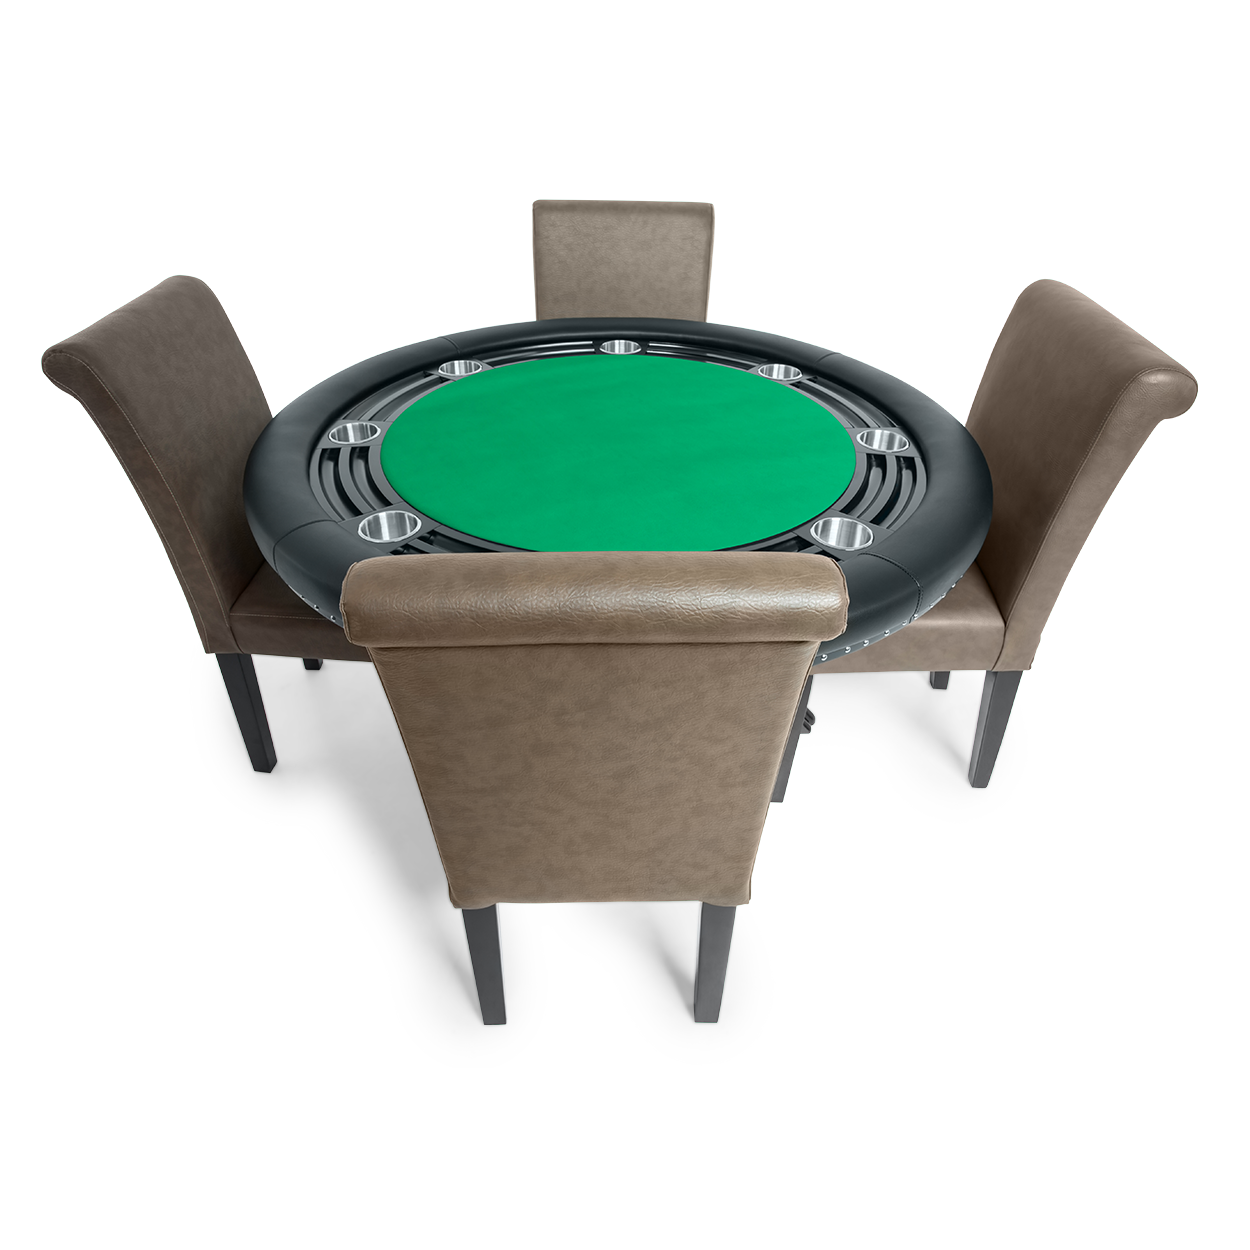 BBO The Nighthawk Poker Table Black Leg Velveteen Green And BBO Chair